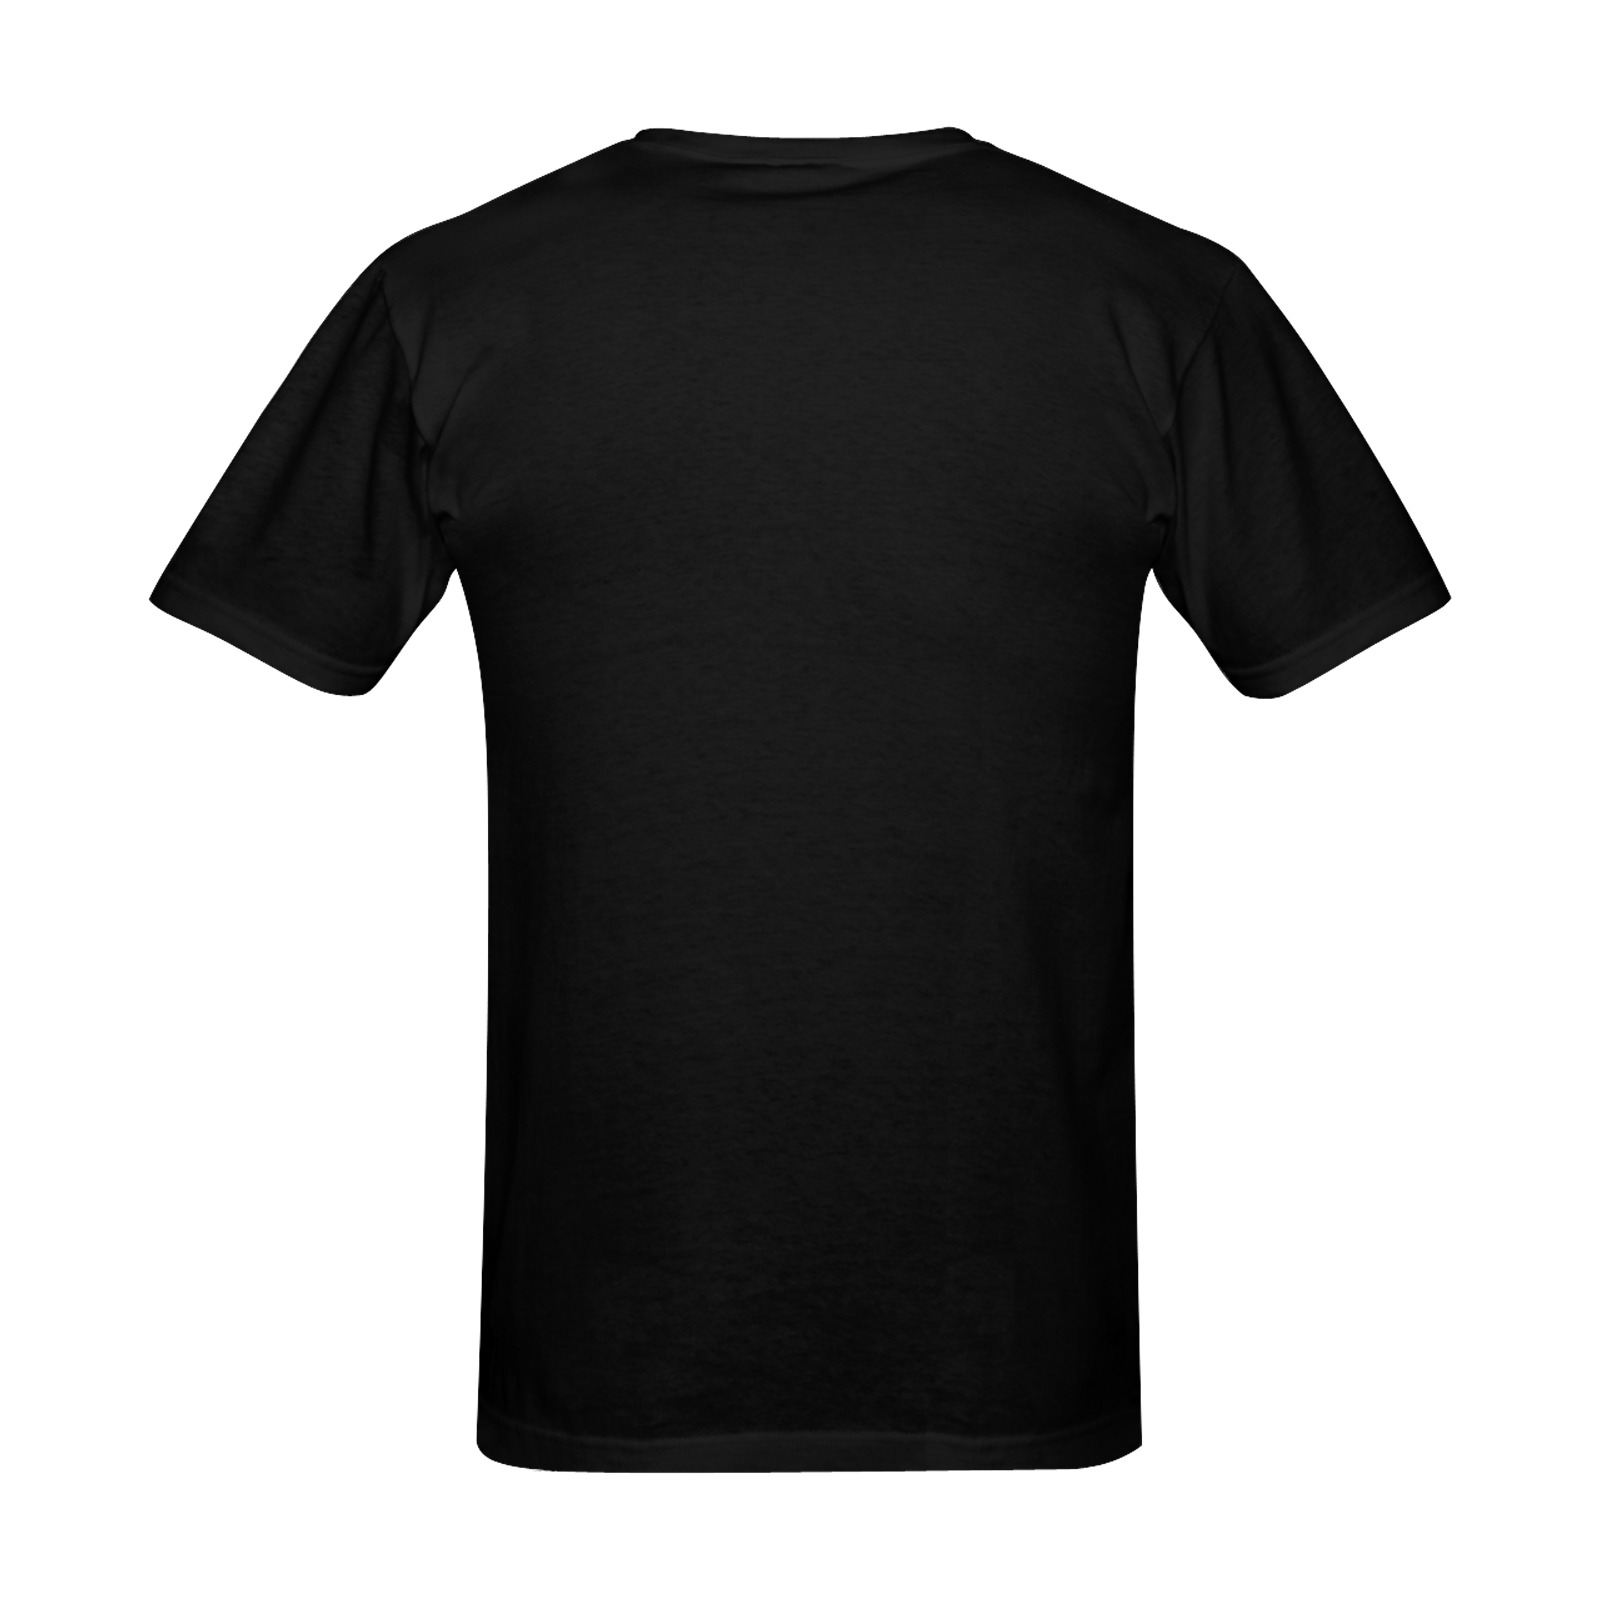 Skull Men's Slim Fit T-shirt (Model T13)